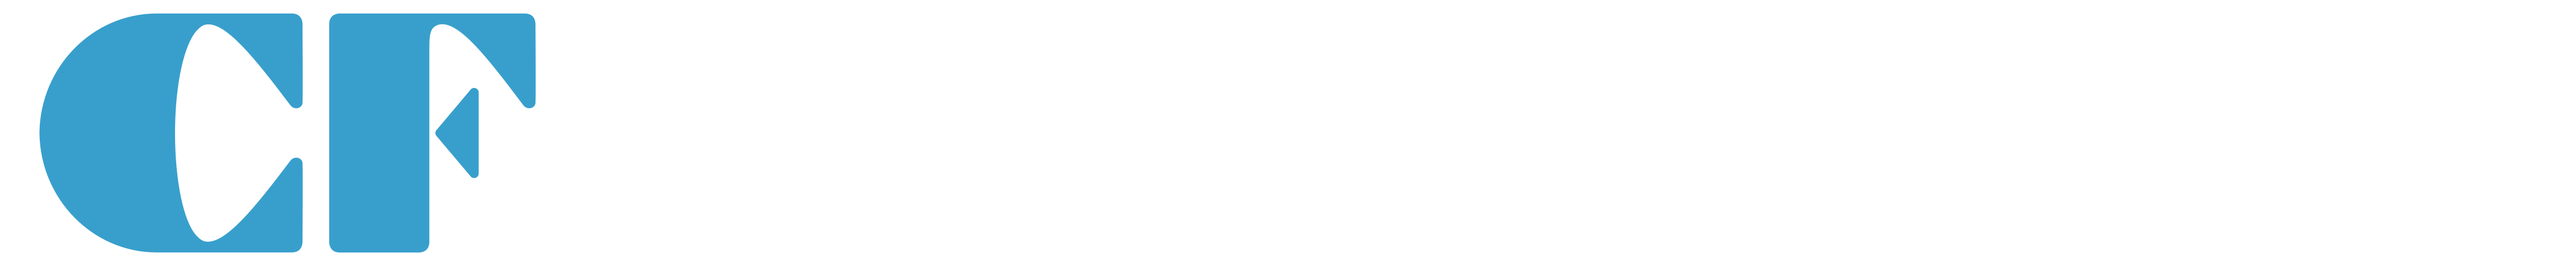 [CF Concierge] - Logo